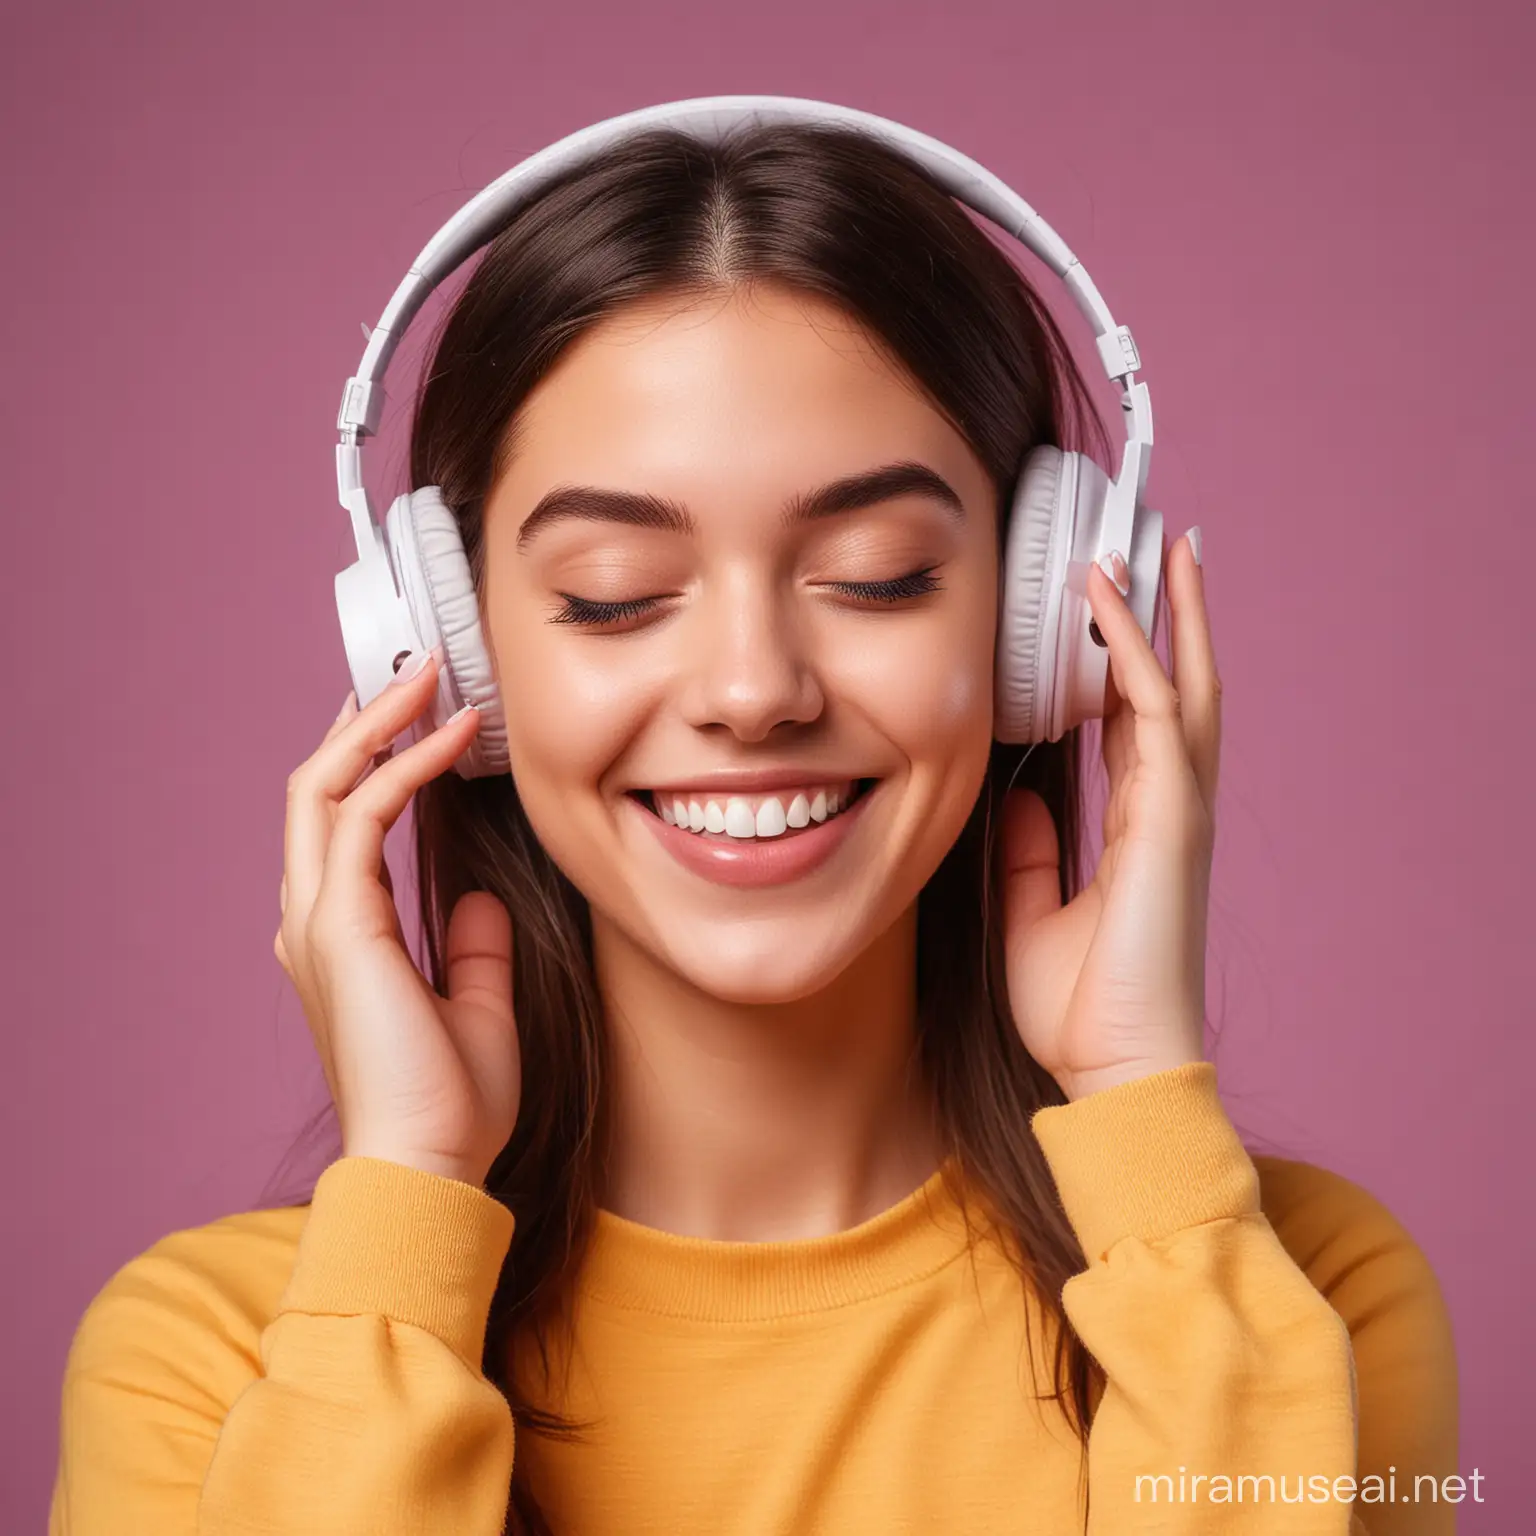 一个听到音乐的女生（用蓝牙耳机），感到恋爱的开心，背景纯色